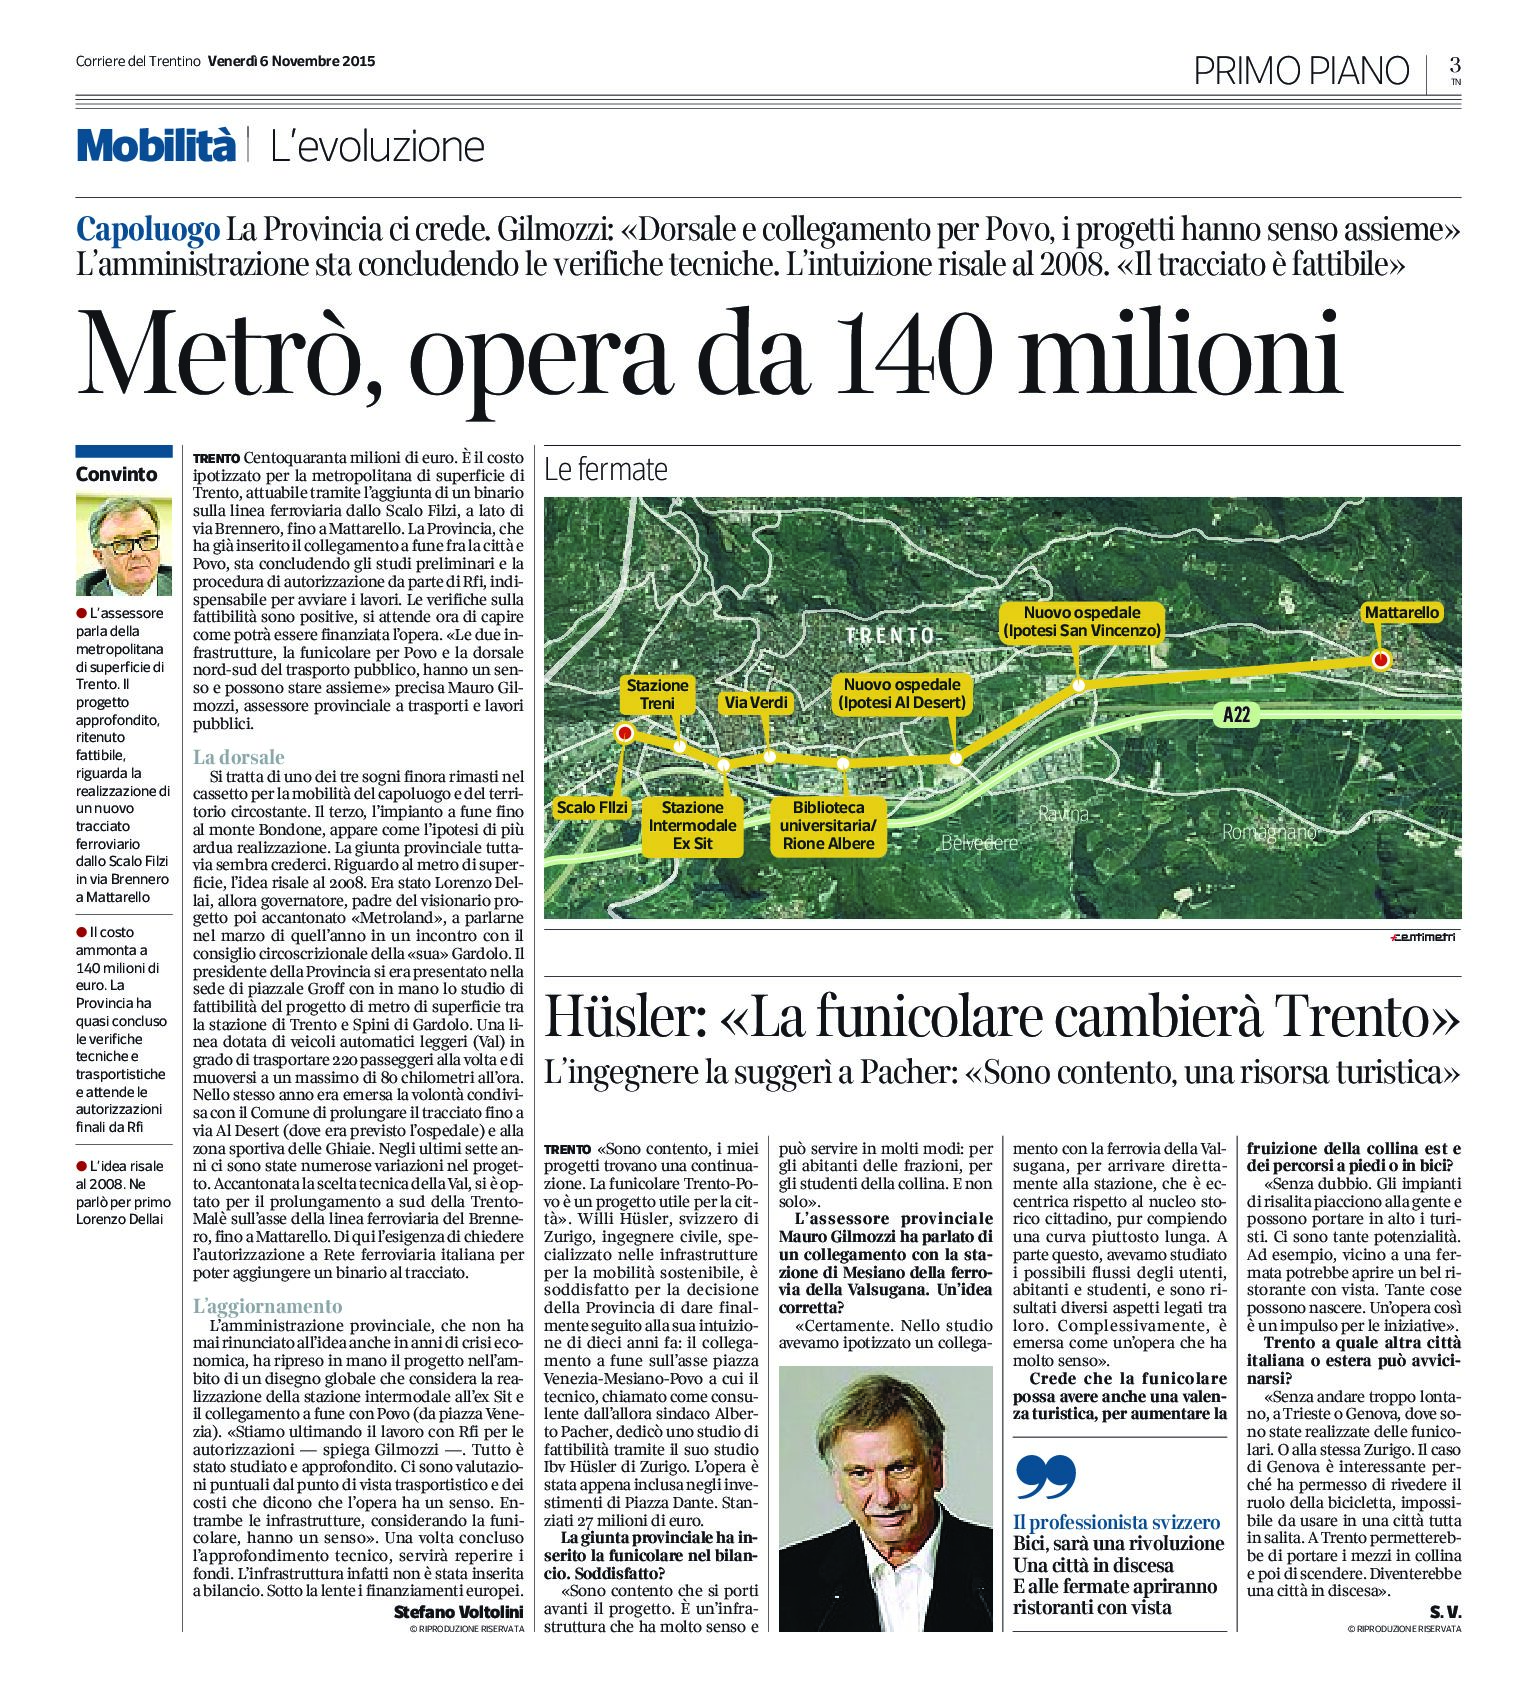 Trento: metrò e funicolare “i progetti hanno senso assieme”